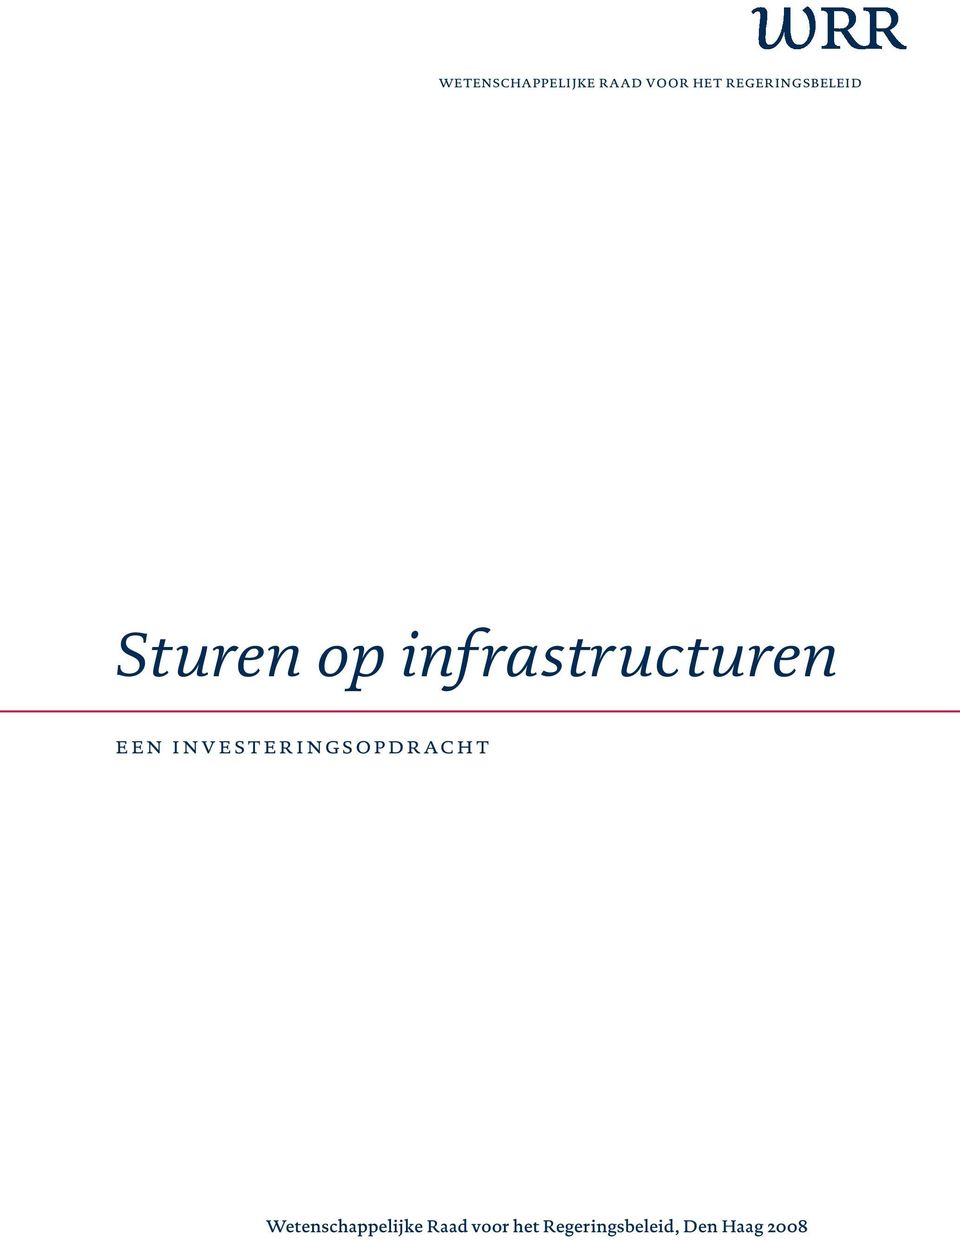 infrastructuren een investeringsopdracht